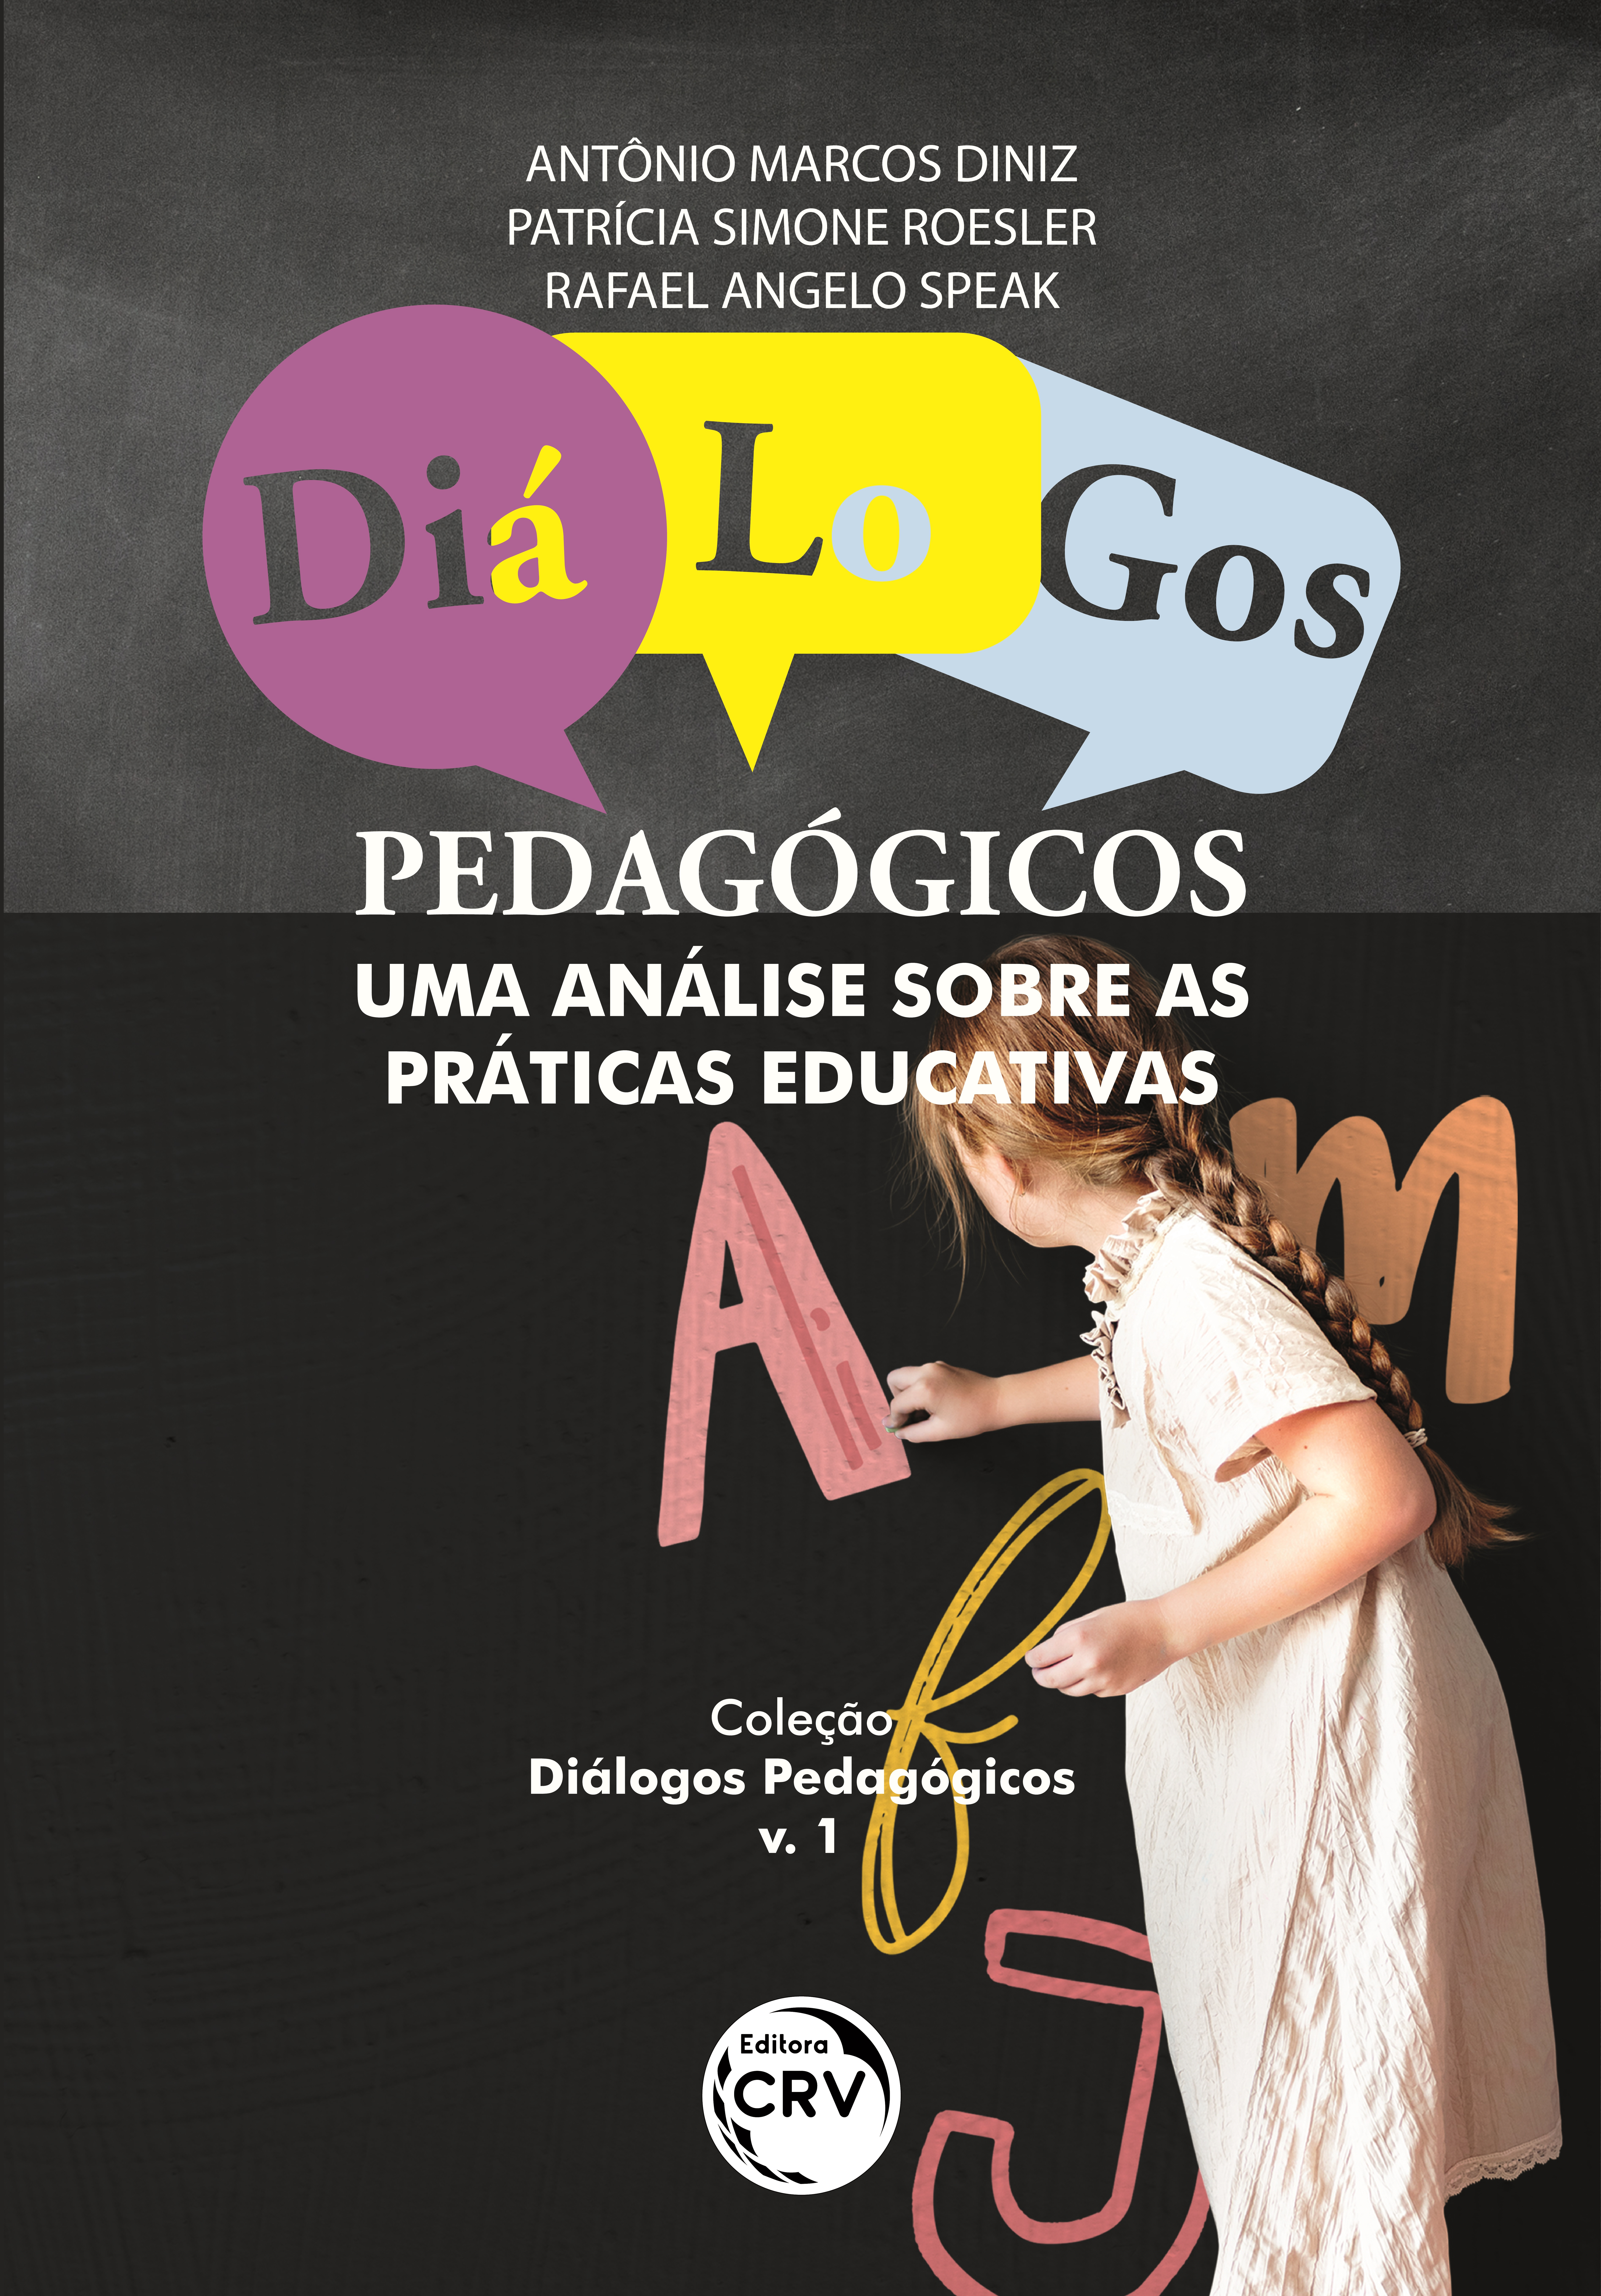 Capa do livro: DIÁLOGOS PEDAGÓGICOS:<br> uma análise sobre as práticas educativas <br>Coleção Diálogos Pedagógicos<br> Volume 1